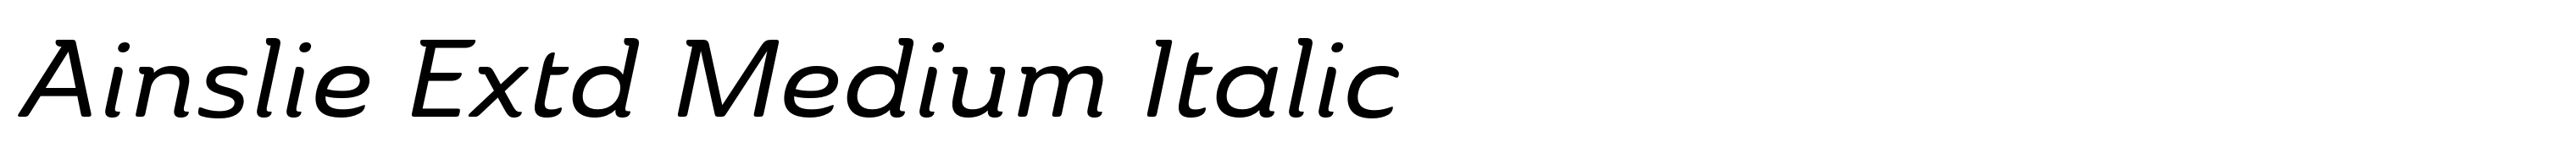 Ainslie Extd Medium Italic